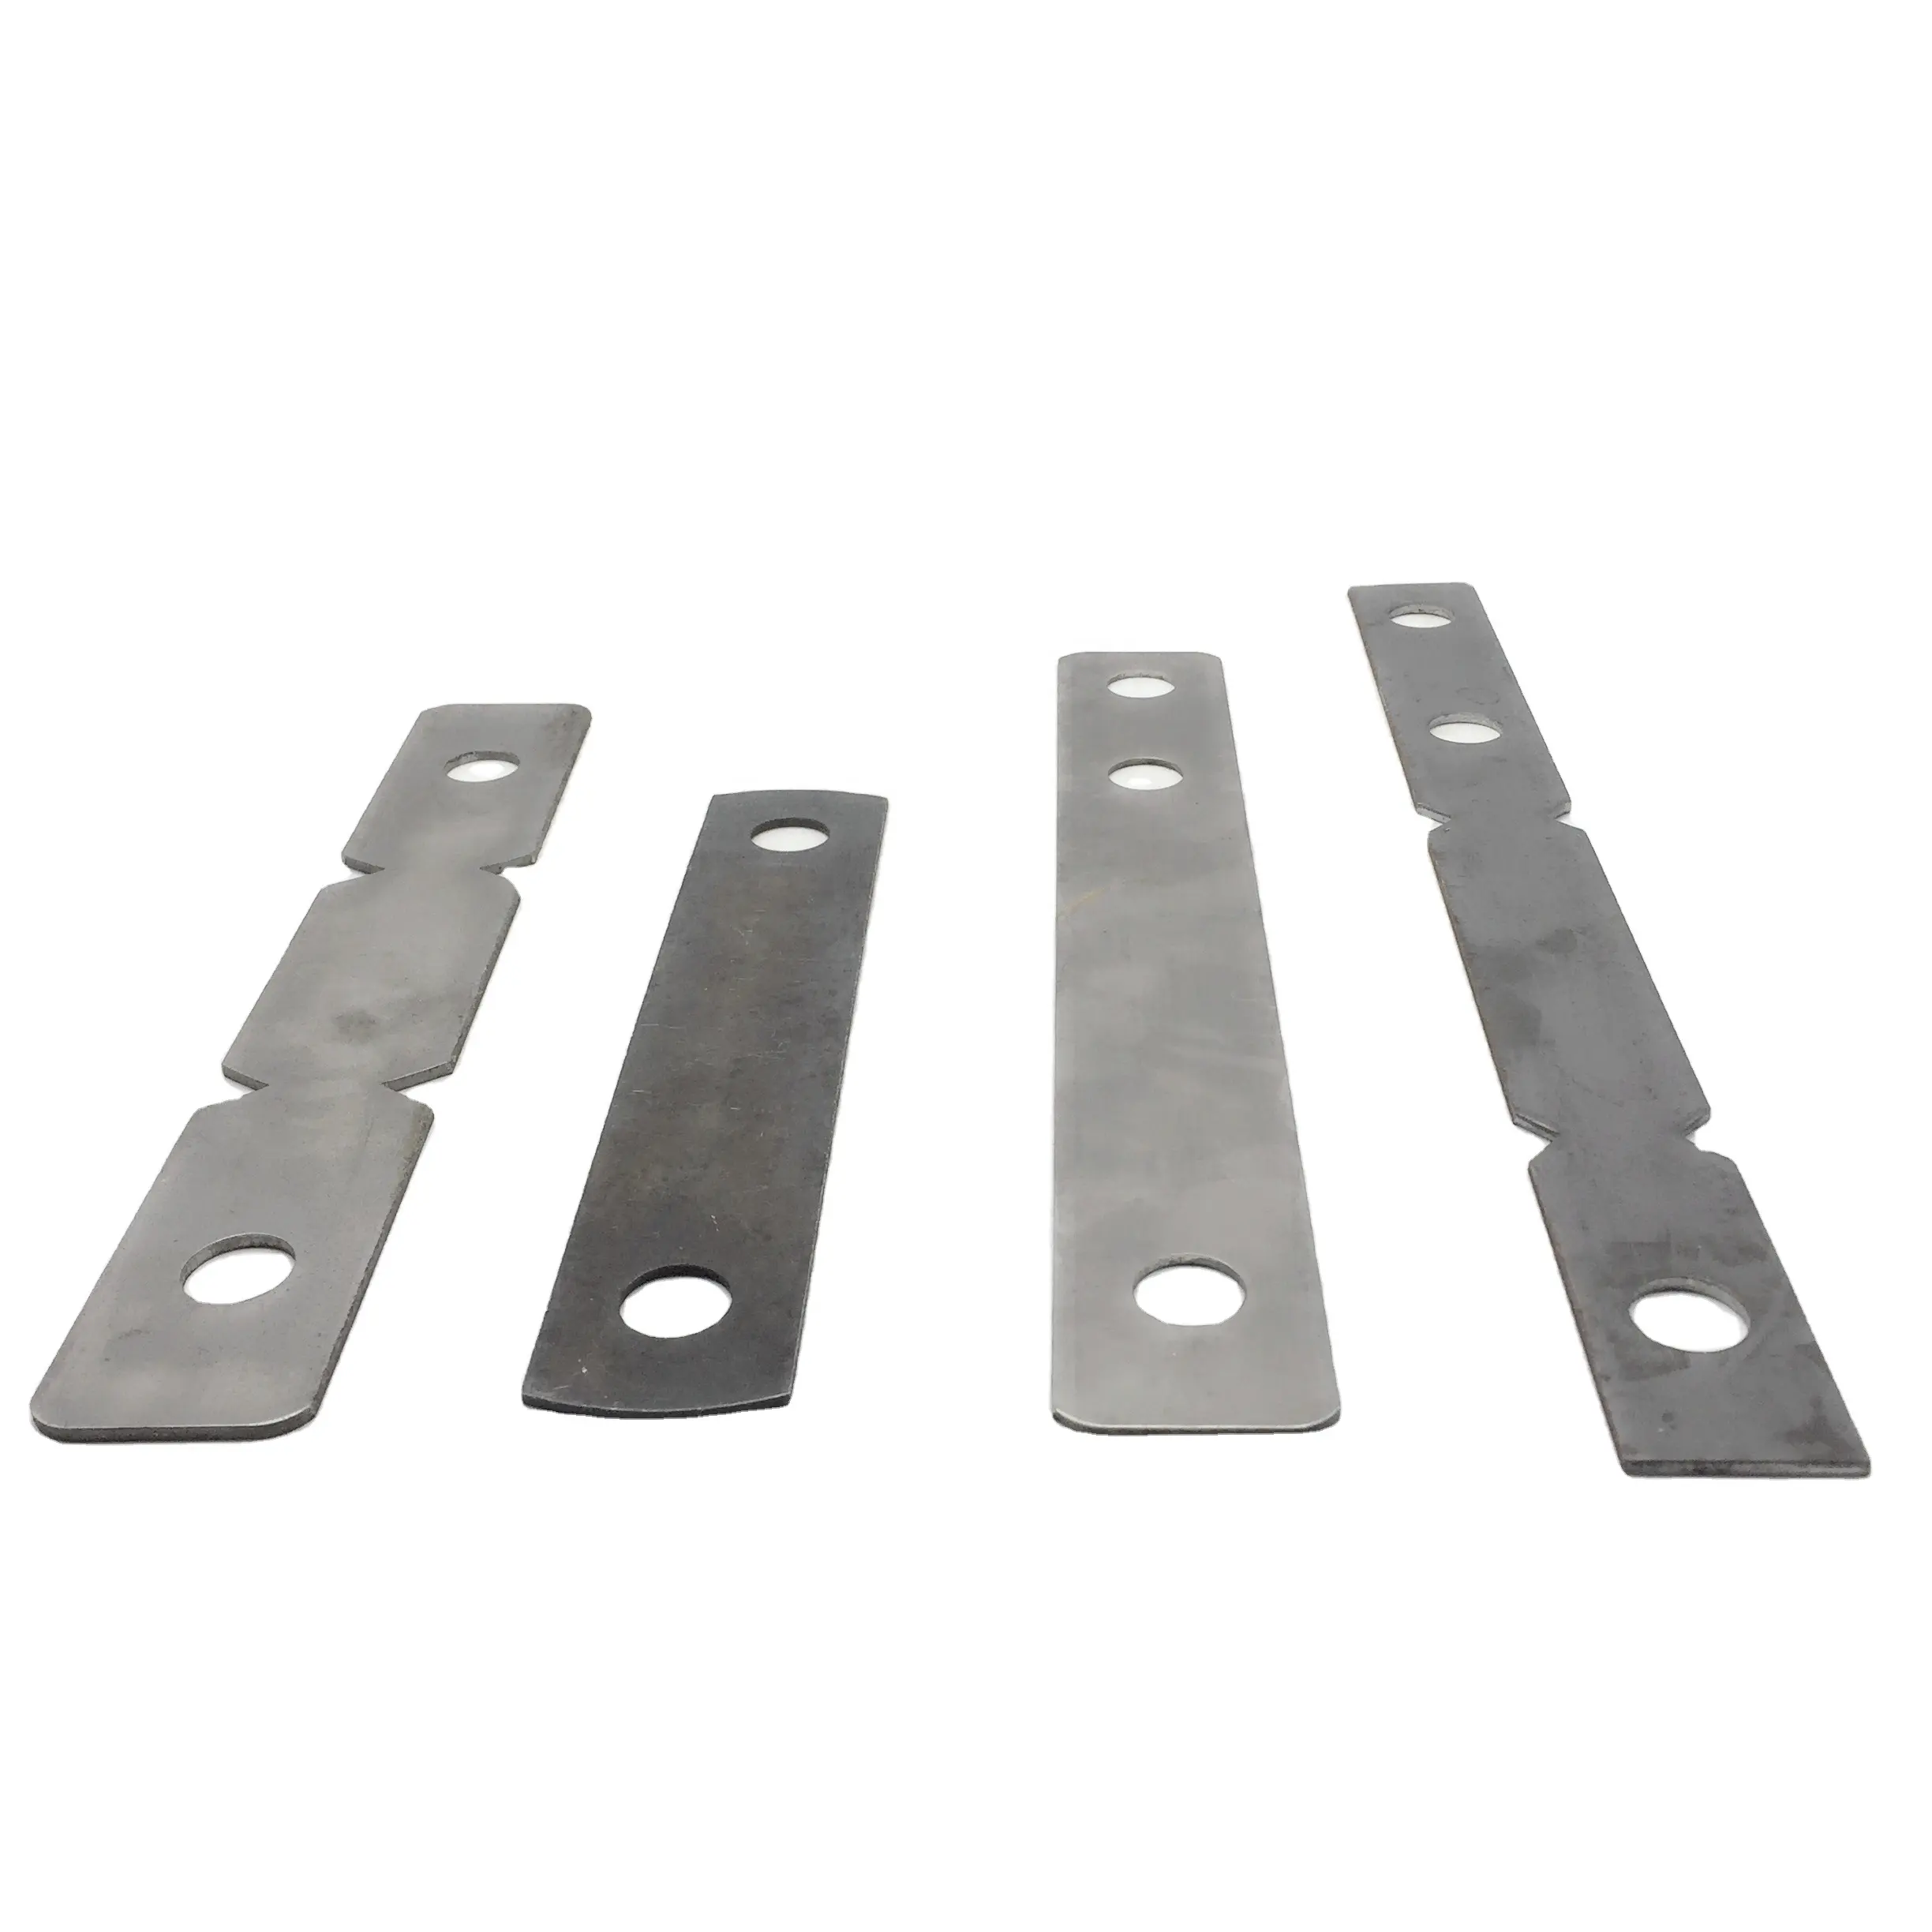 Concrete Steel Tie Schalung Voll nominale Wand binder für Baustoffe Form X Flat Tie mit Metalls tift und Keils ch raube